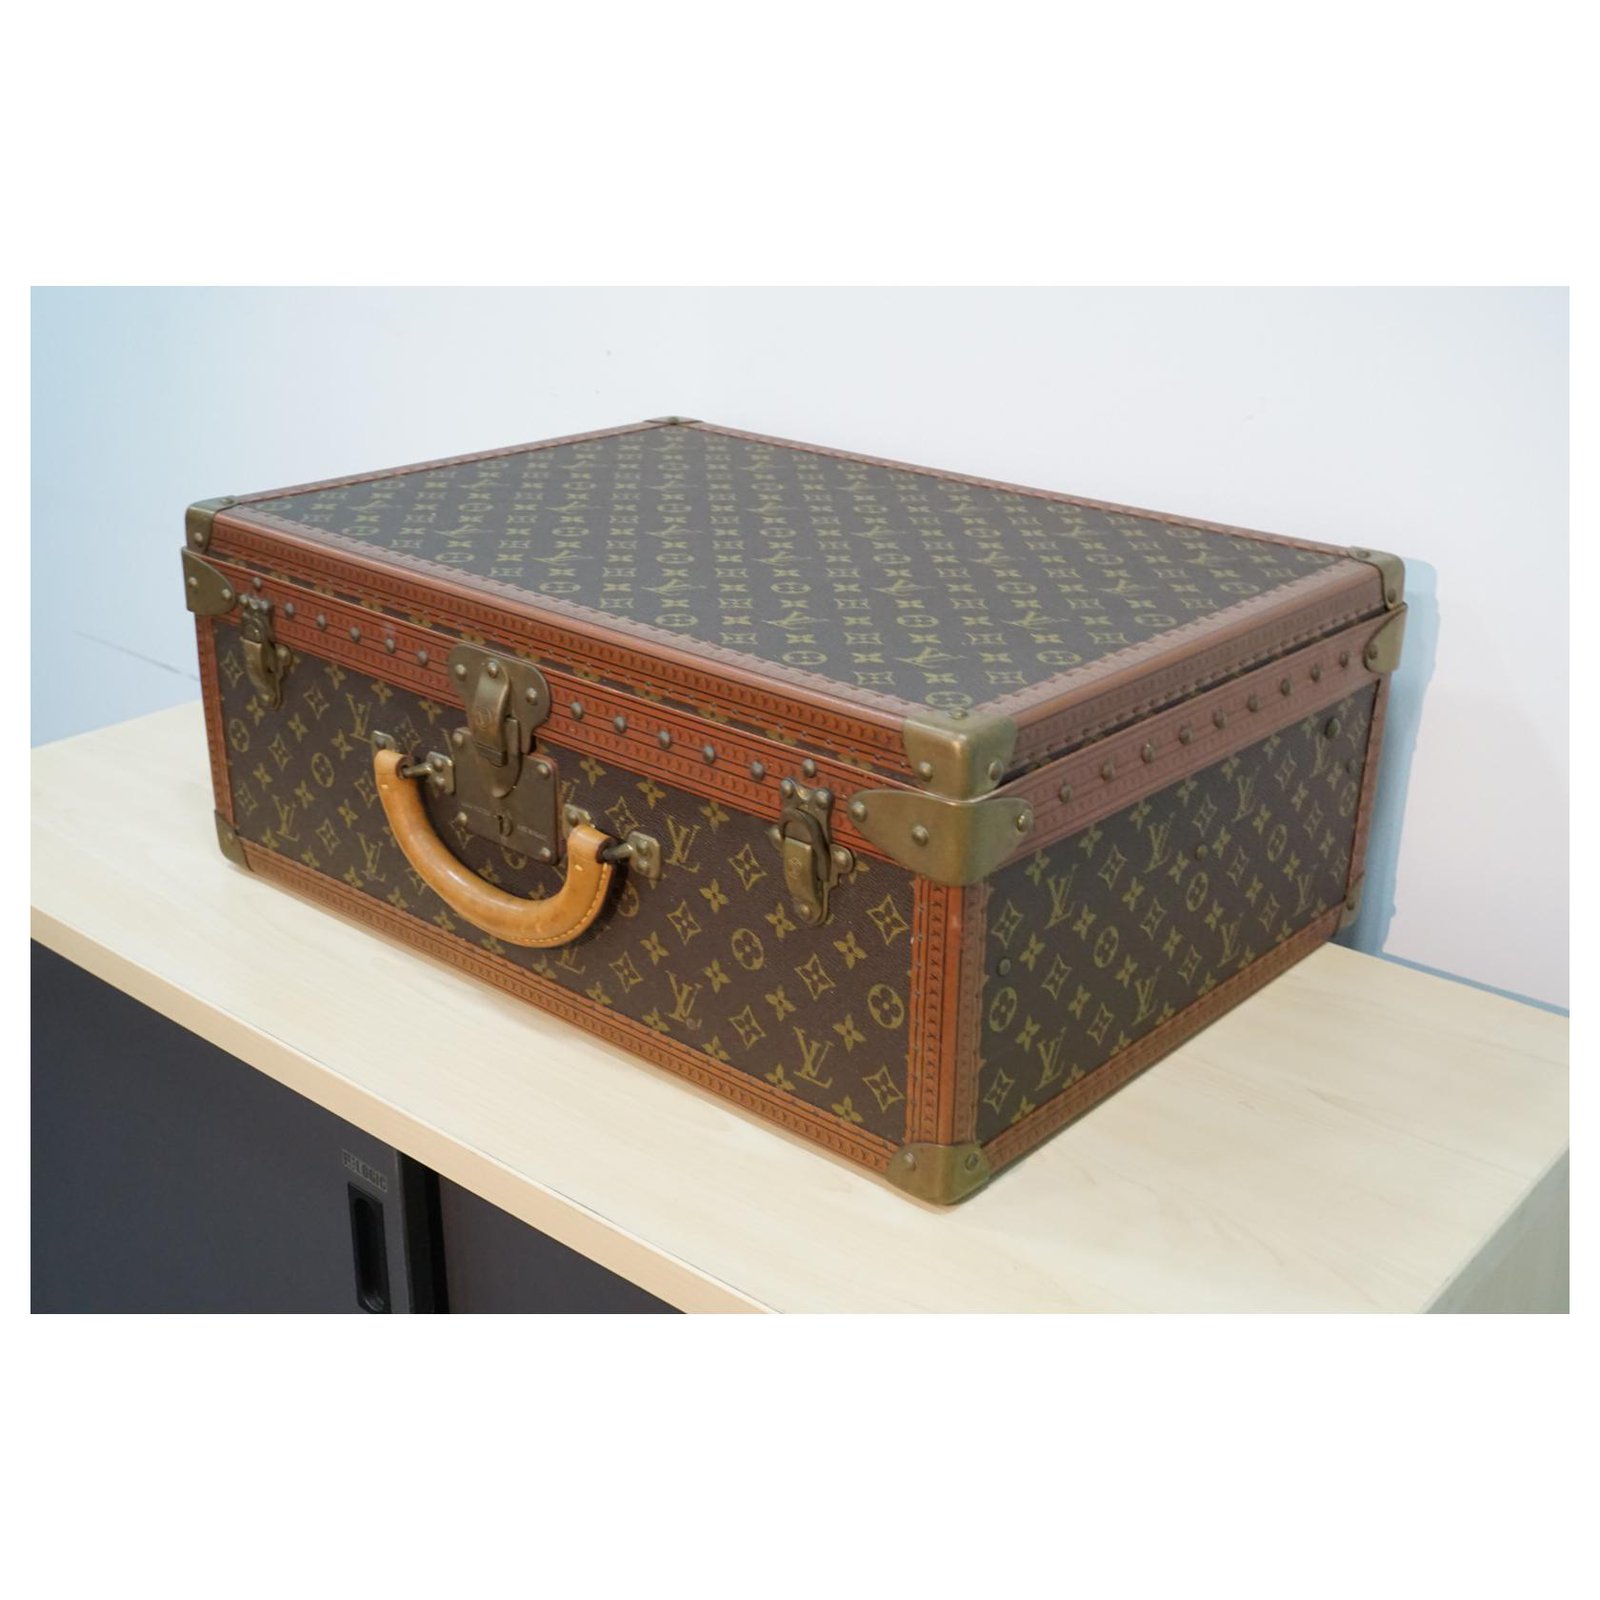 Louis Vuitton Alzer 65 M21227 Monogram Trunk Hard Case Handbag Luggage Bag  Brown